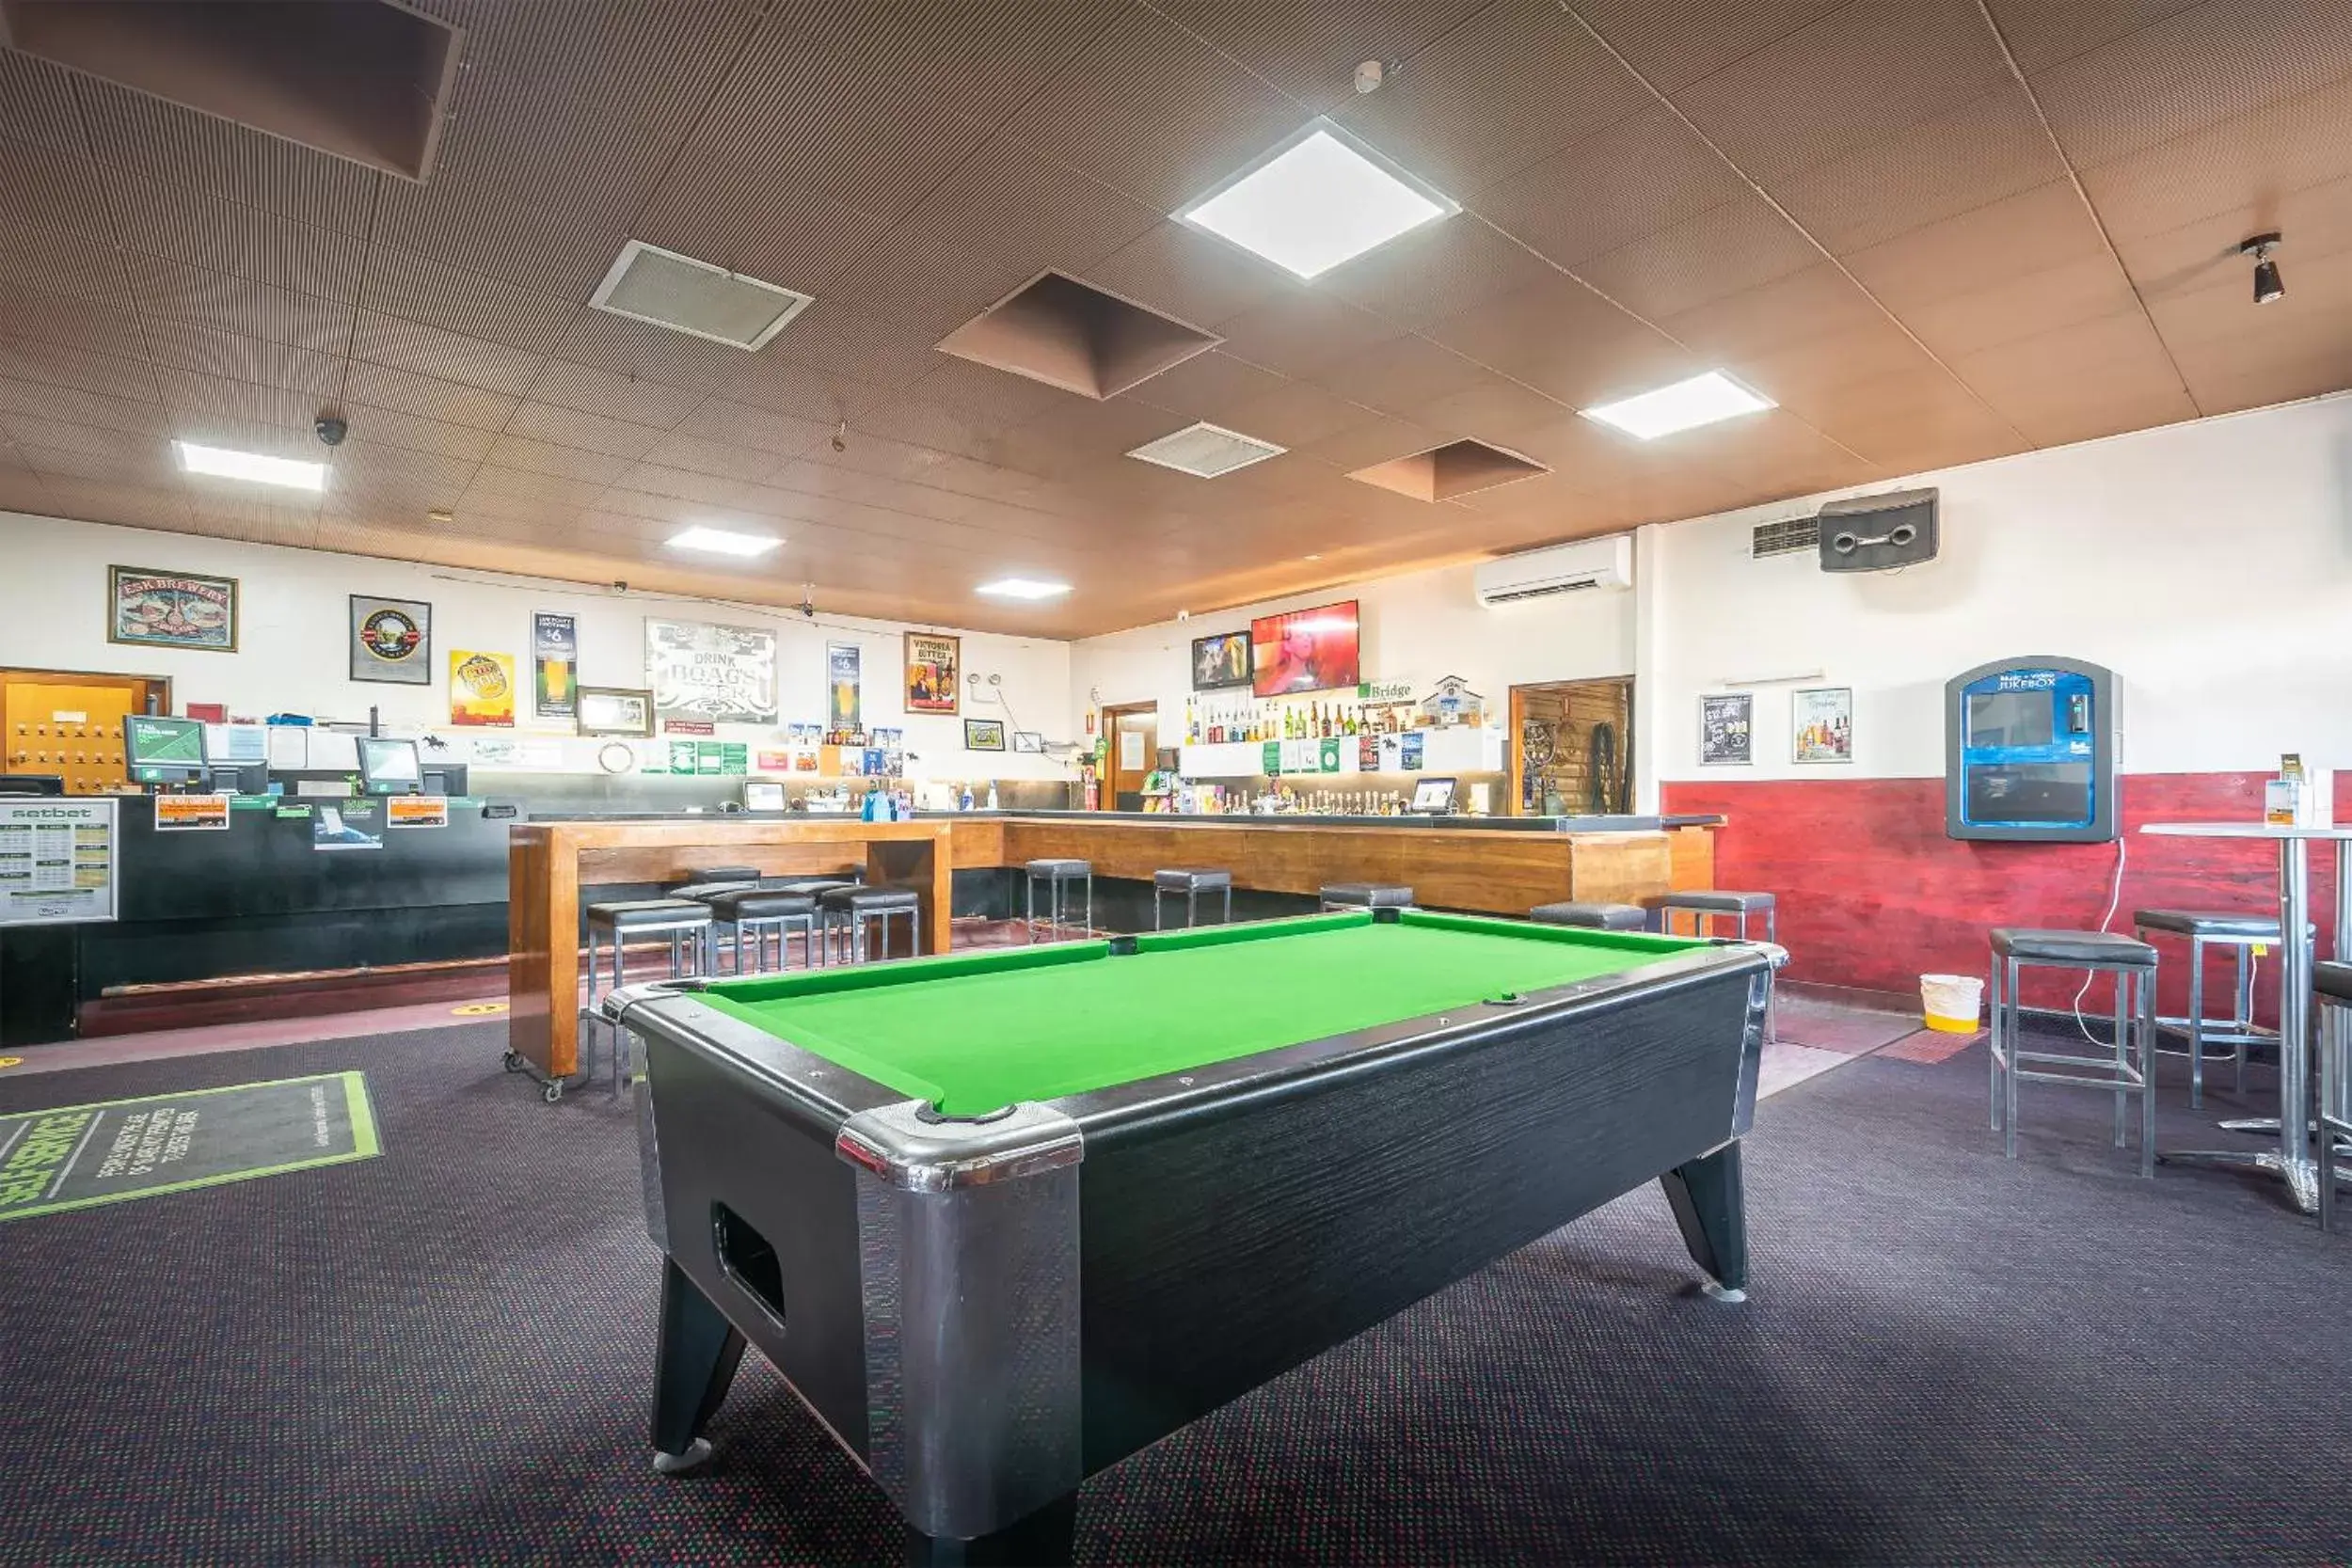 Lounge or bar, Billiards in Bridge Hotel